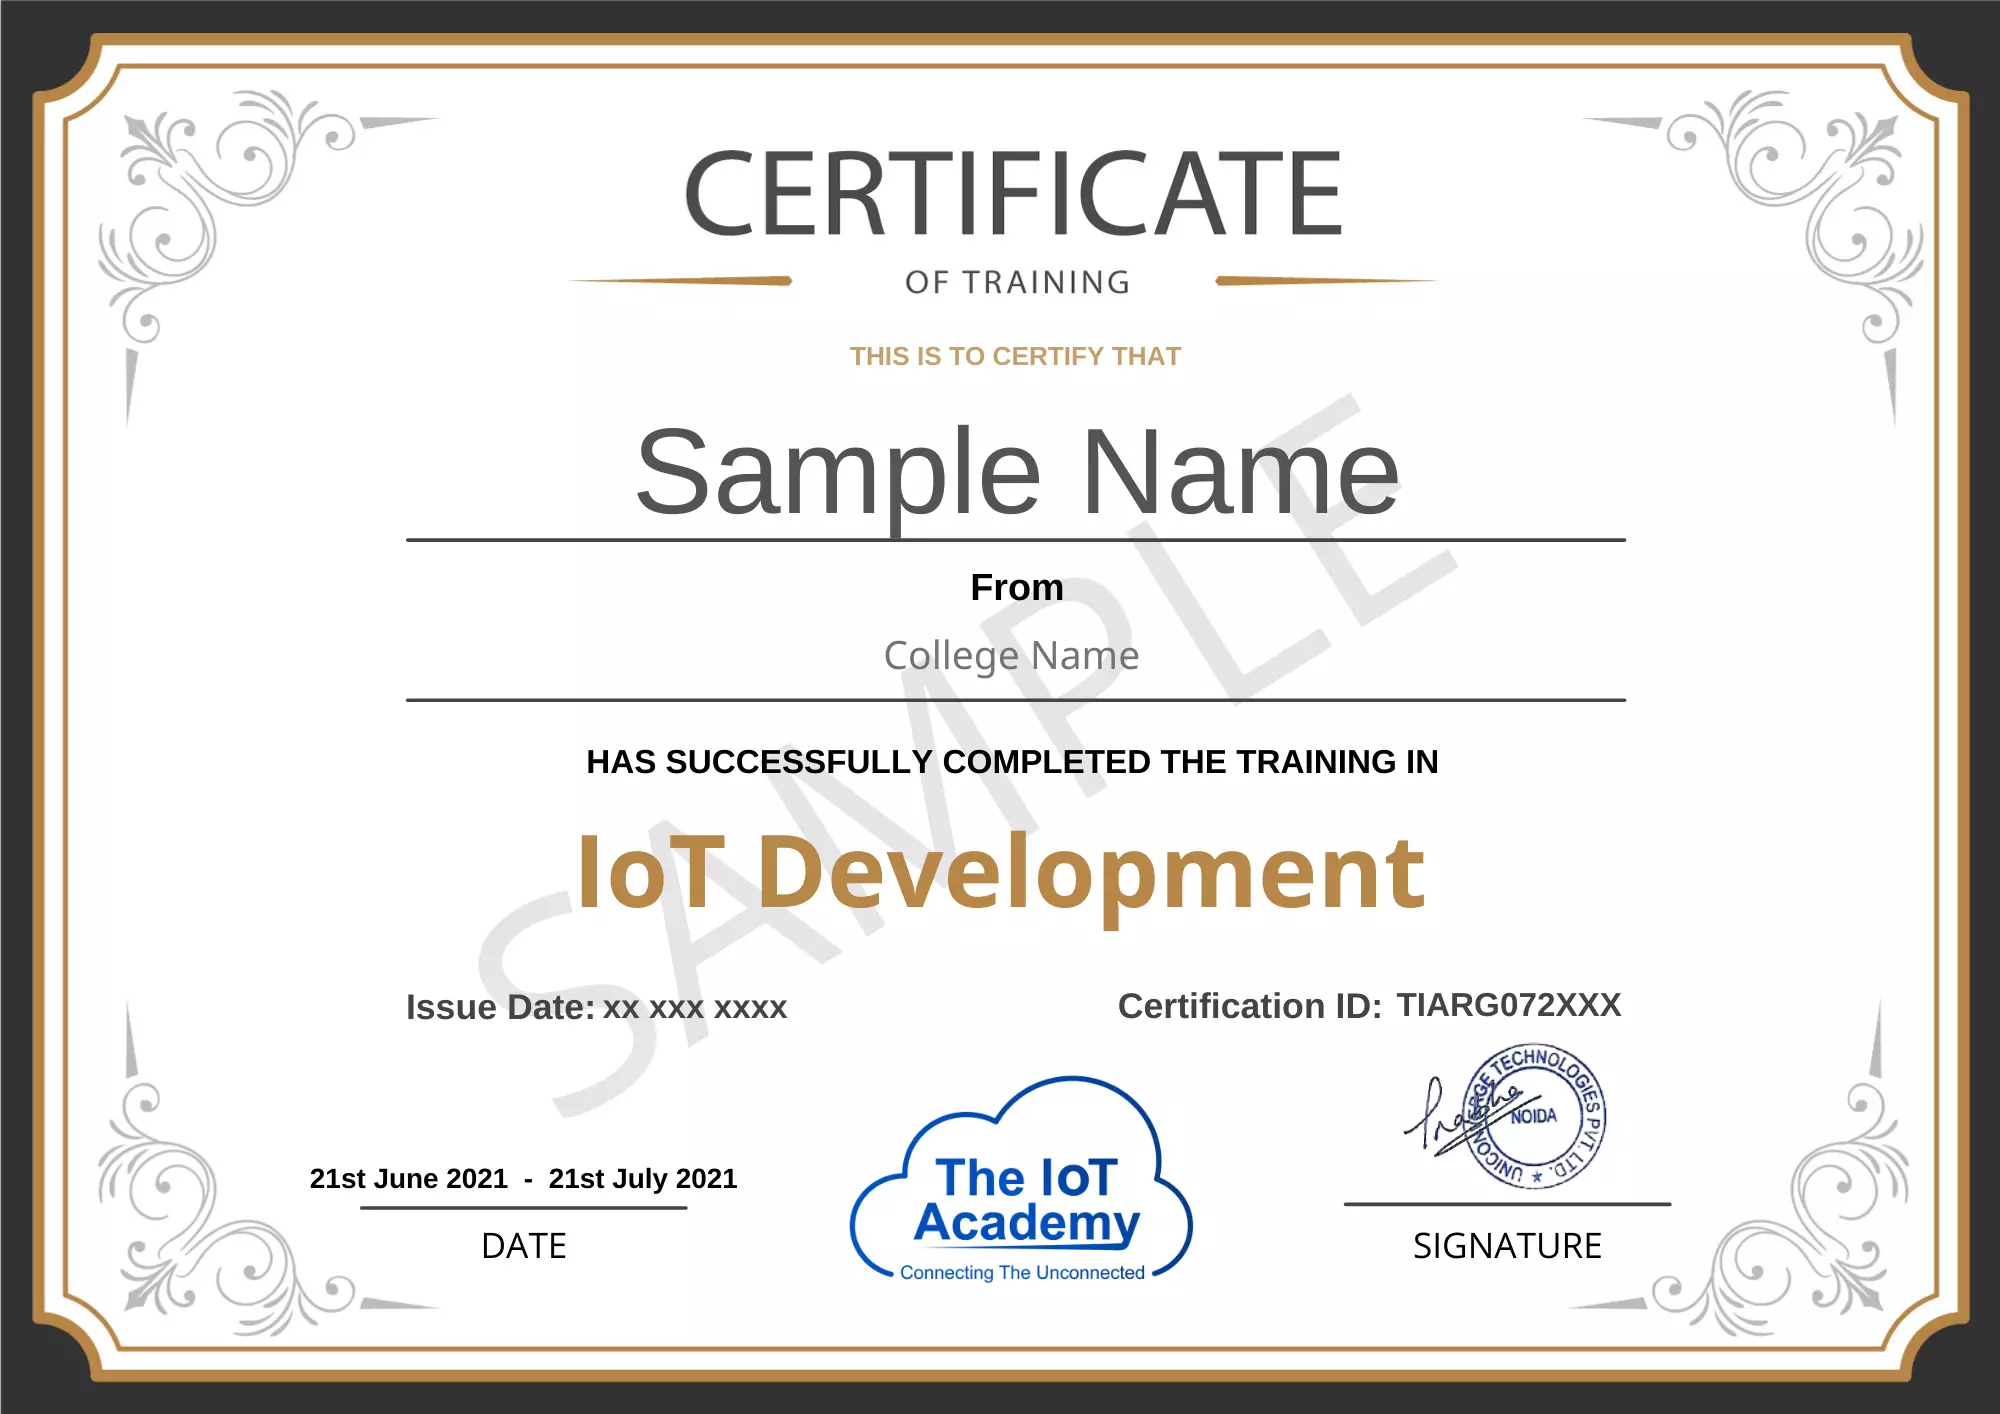 iot certificate